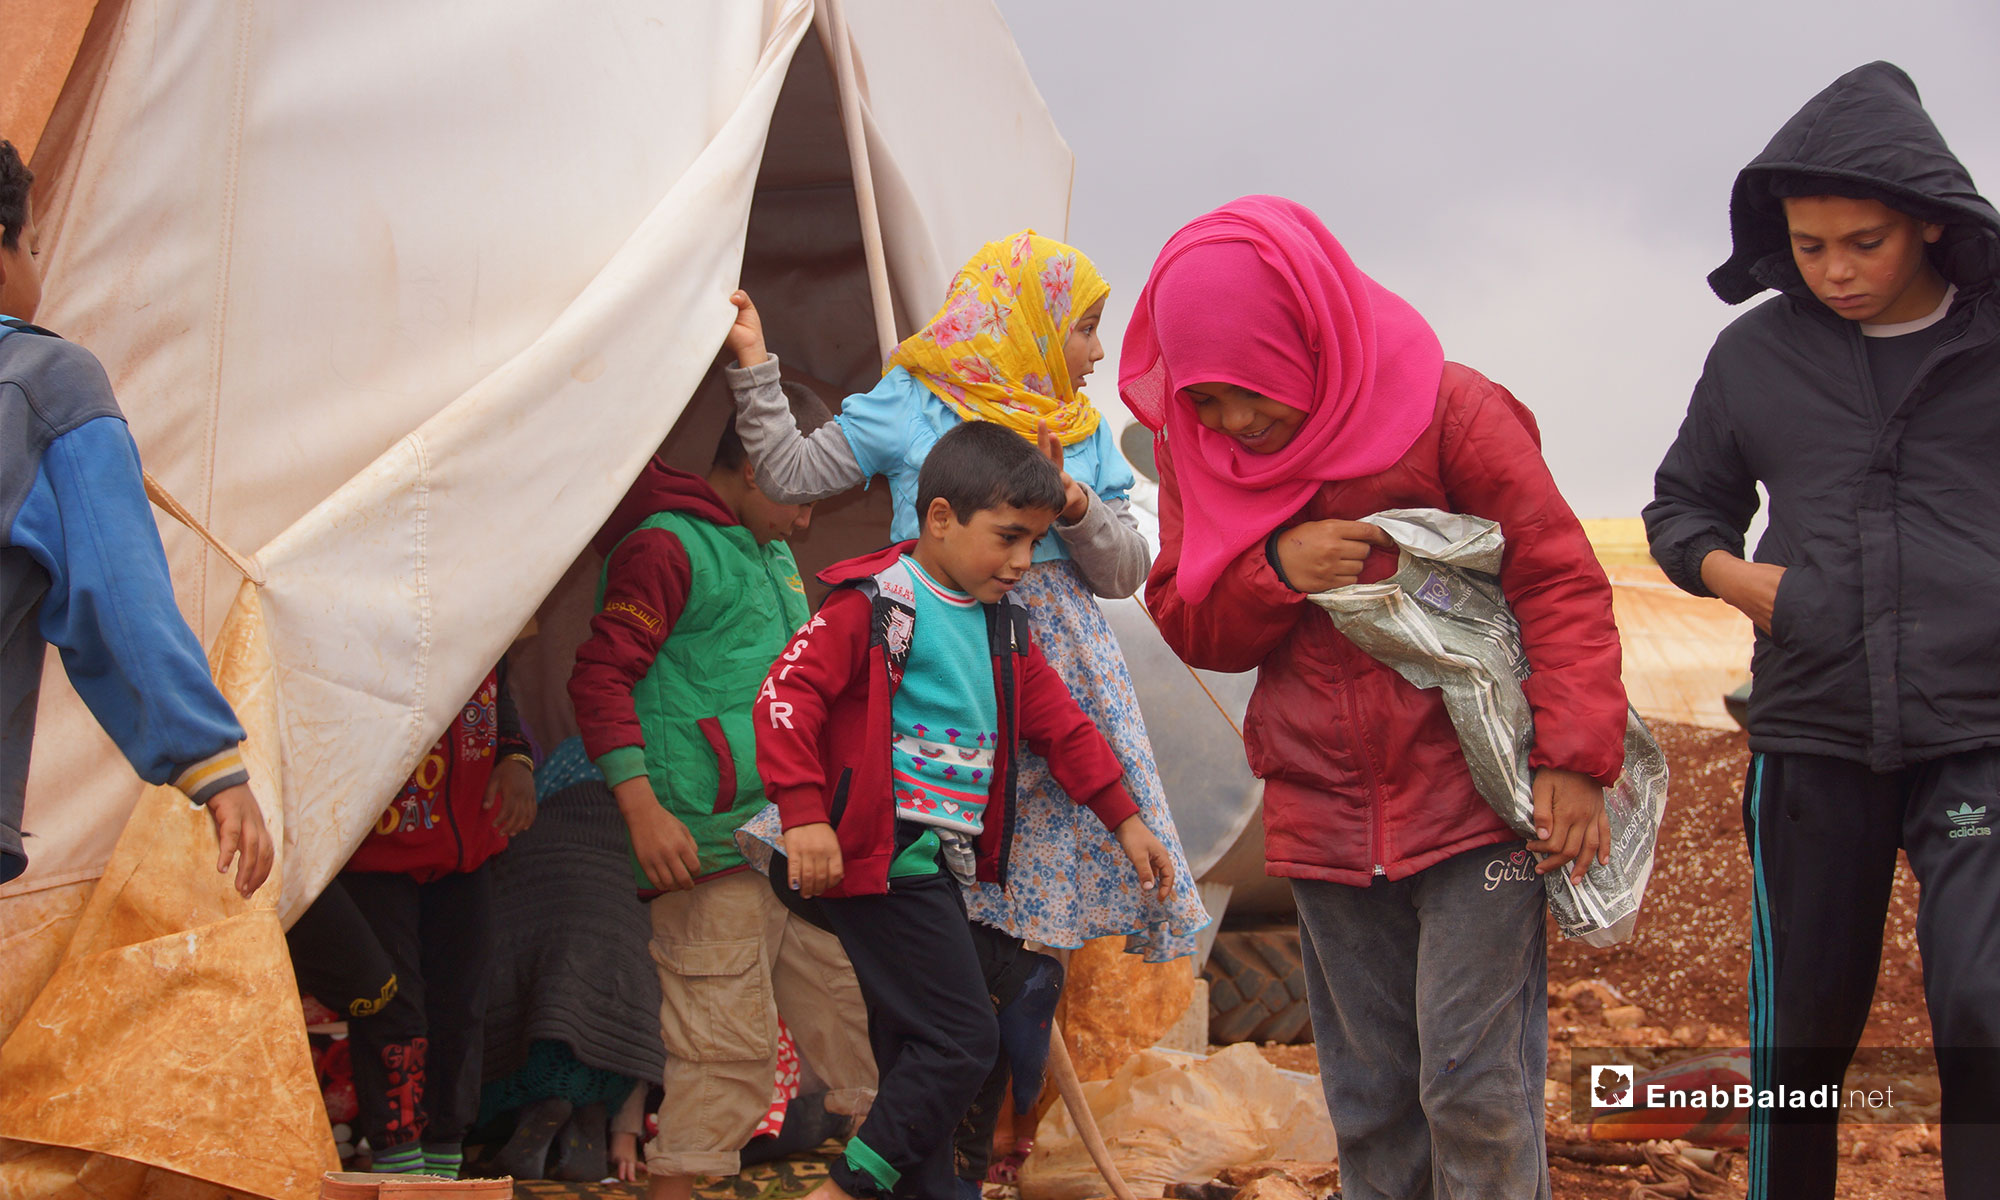 أطفال نازحون من ريف حماة في مخيم أبو الوليد بريف إدلب الجنوبي - 5 من تشرين الثاني 2018 (عنب بلدي)